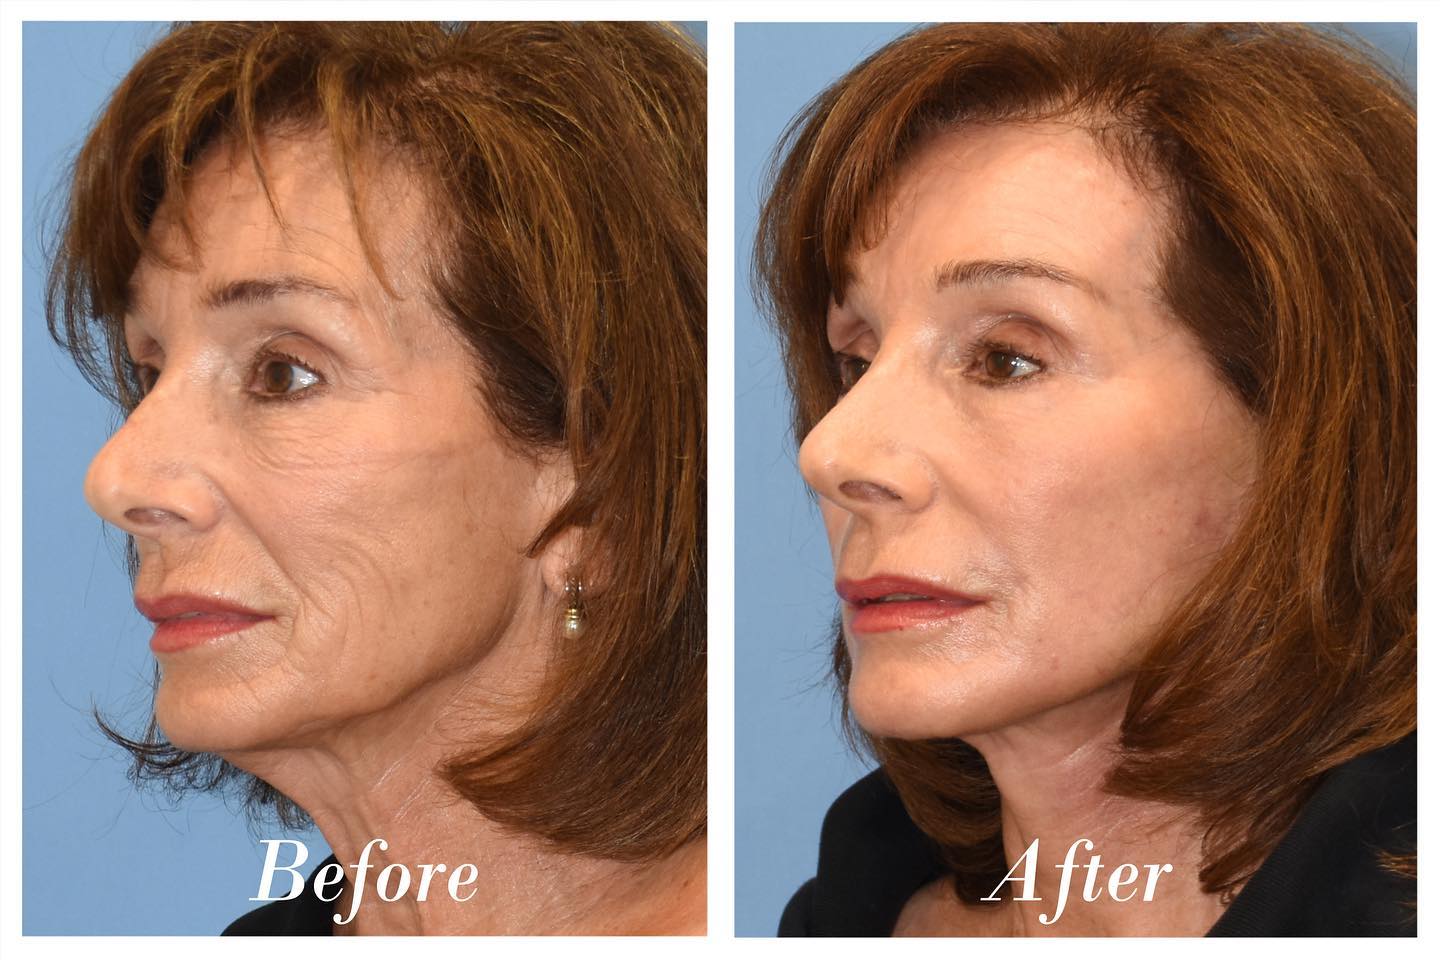 Facelift C02 Laser Skin Resurfacing Before & After Image